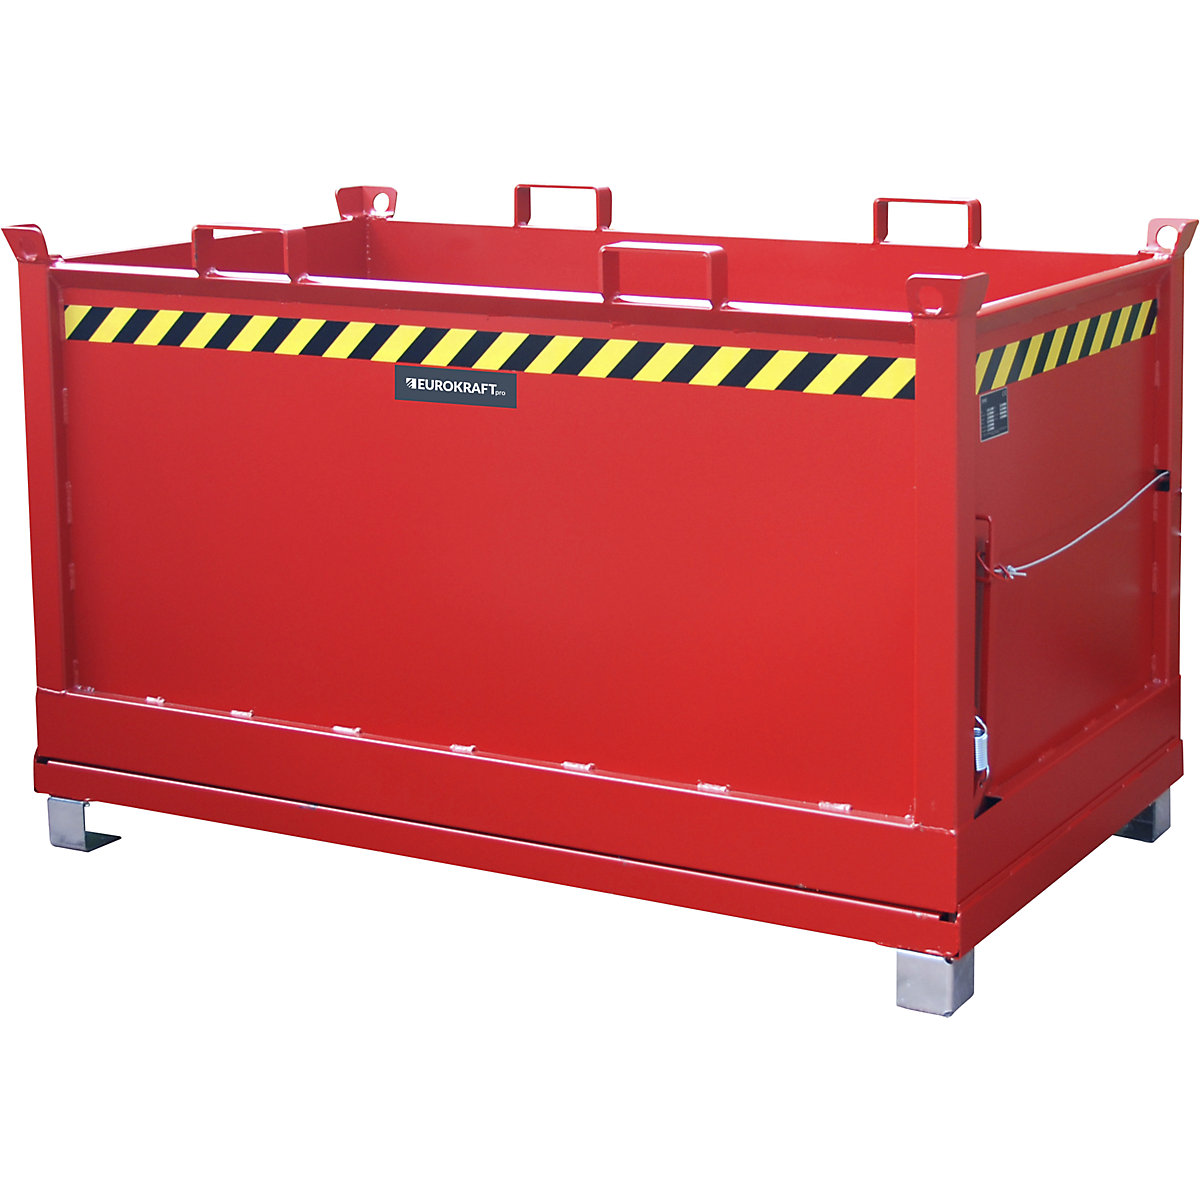 Container cu podea pliabilă – eurokraft pro, volum 1,5 m³, roșu aprins RAL 3000-9